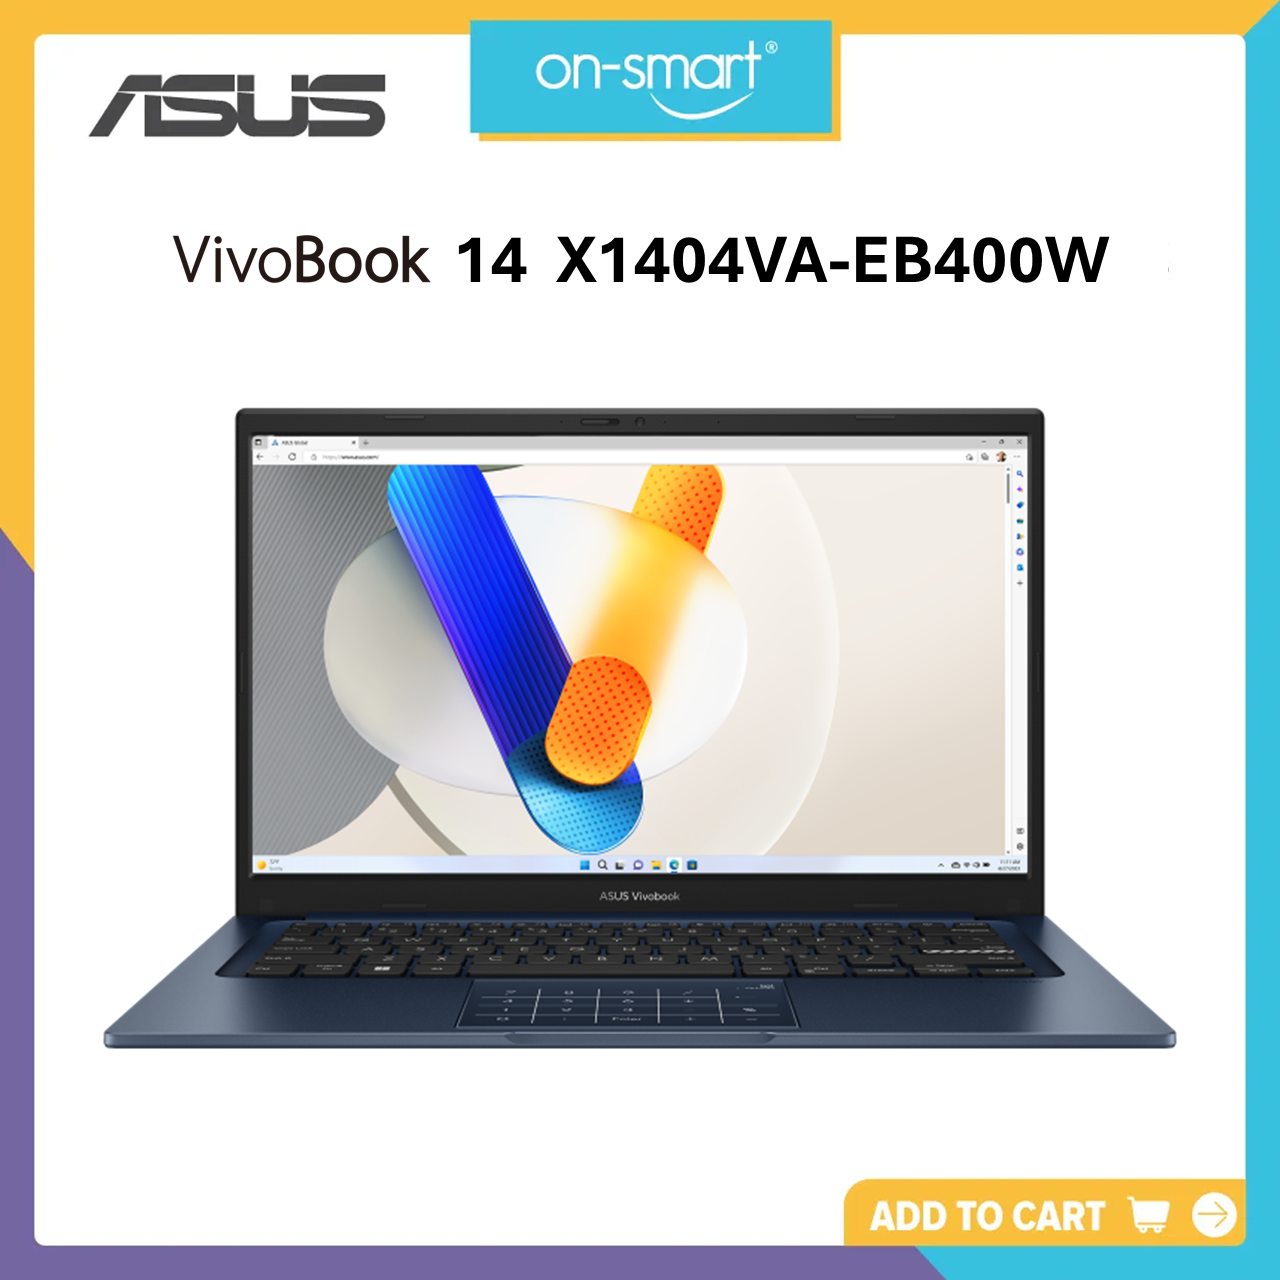 ASUS Vivobook 14 X1404VA-EB400W